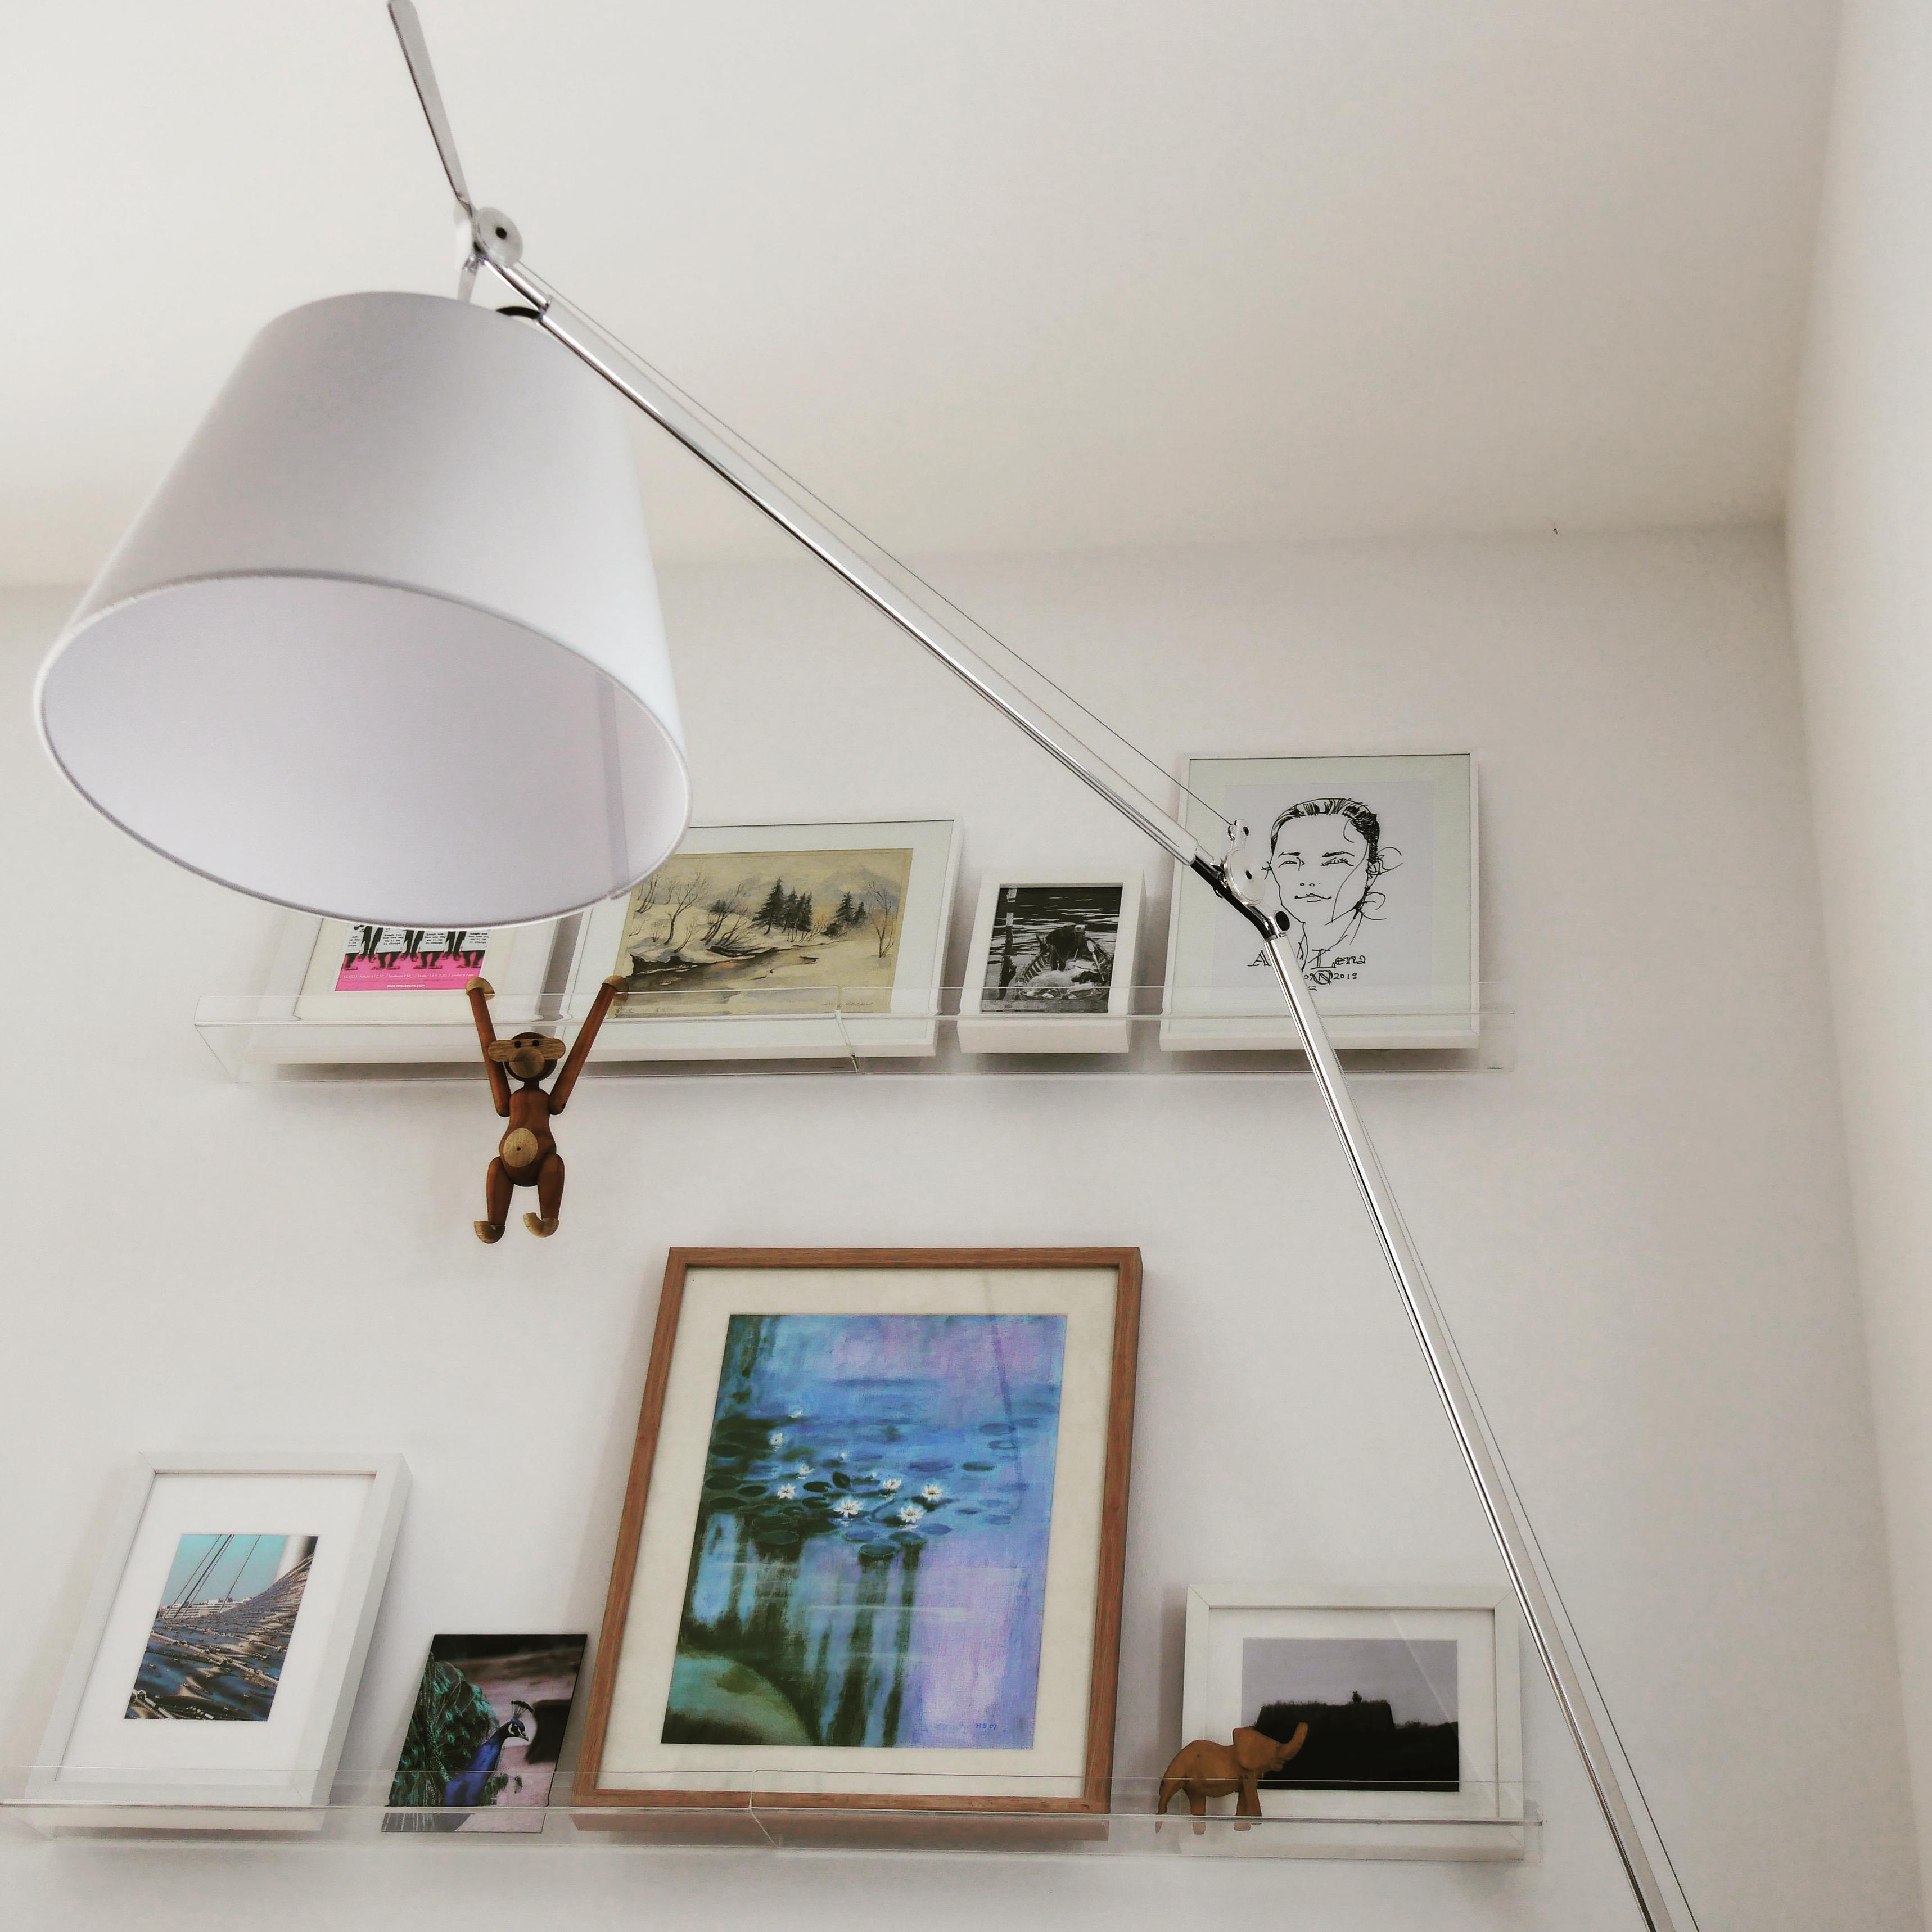 Unsere Galerie-Wand im #Wohnzimmer. Aktuell mit Bildern von Opa, Uropa und Urlaubserinnerungen. #artemide #kaybojesen  